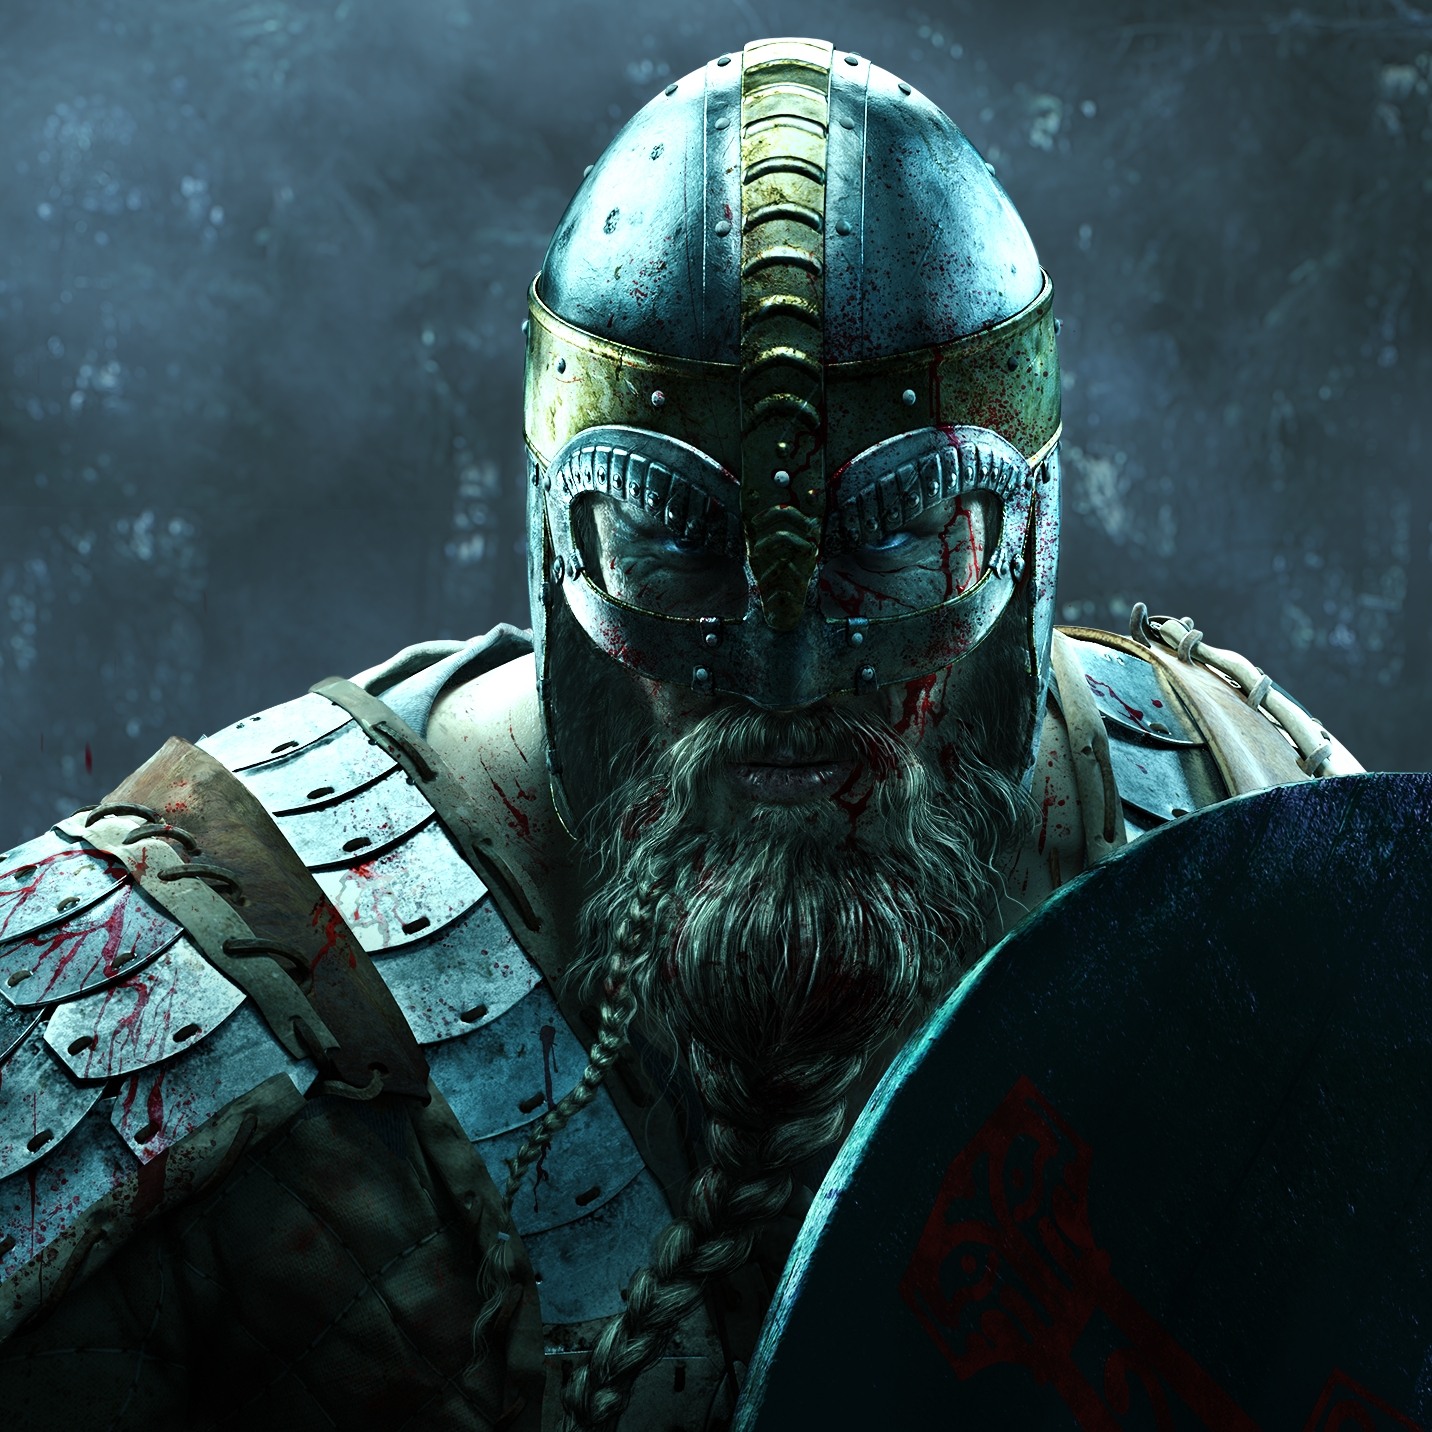 War Of The Vikings #1